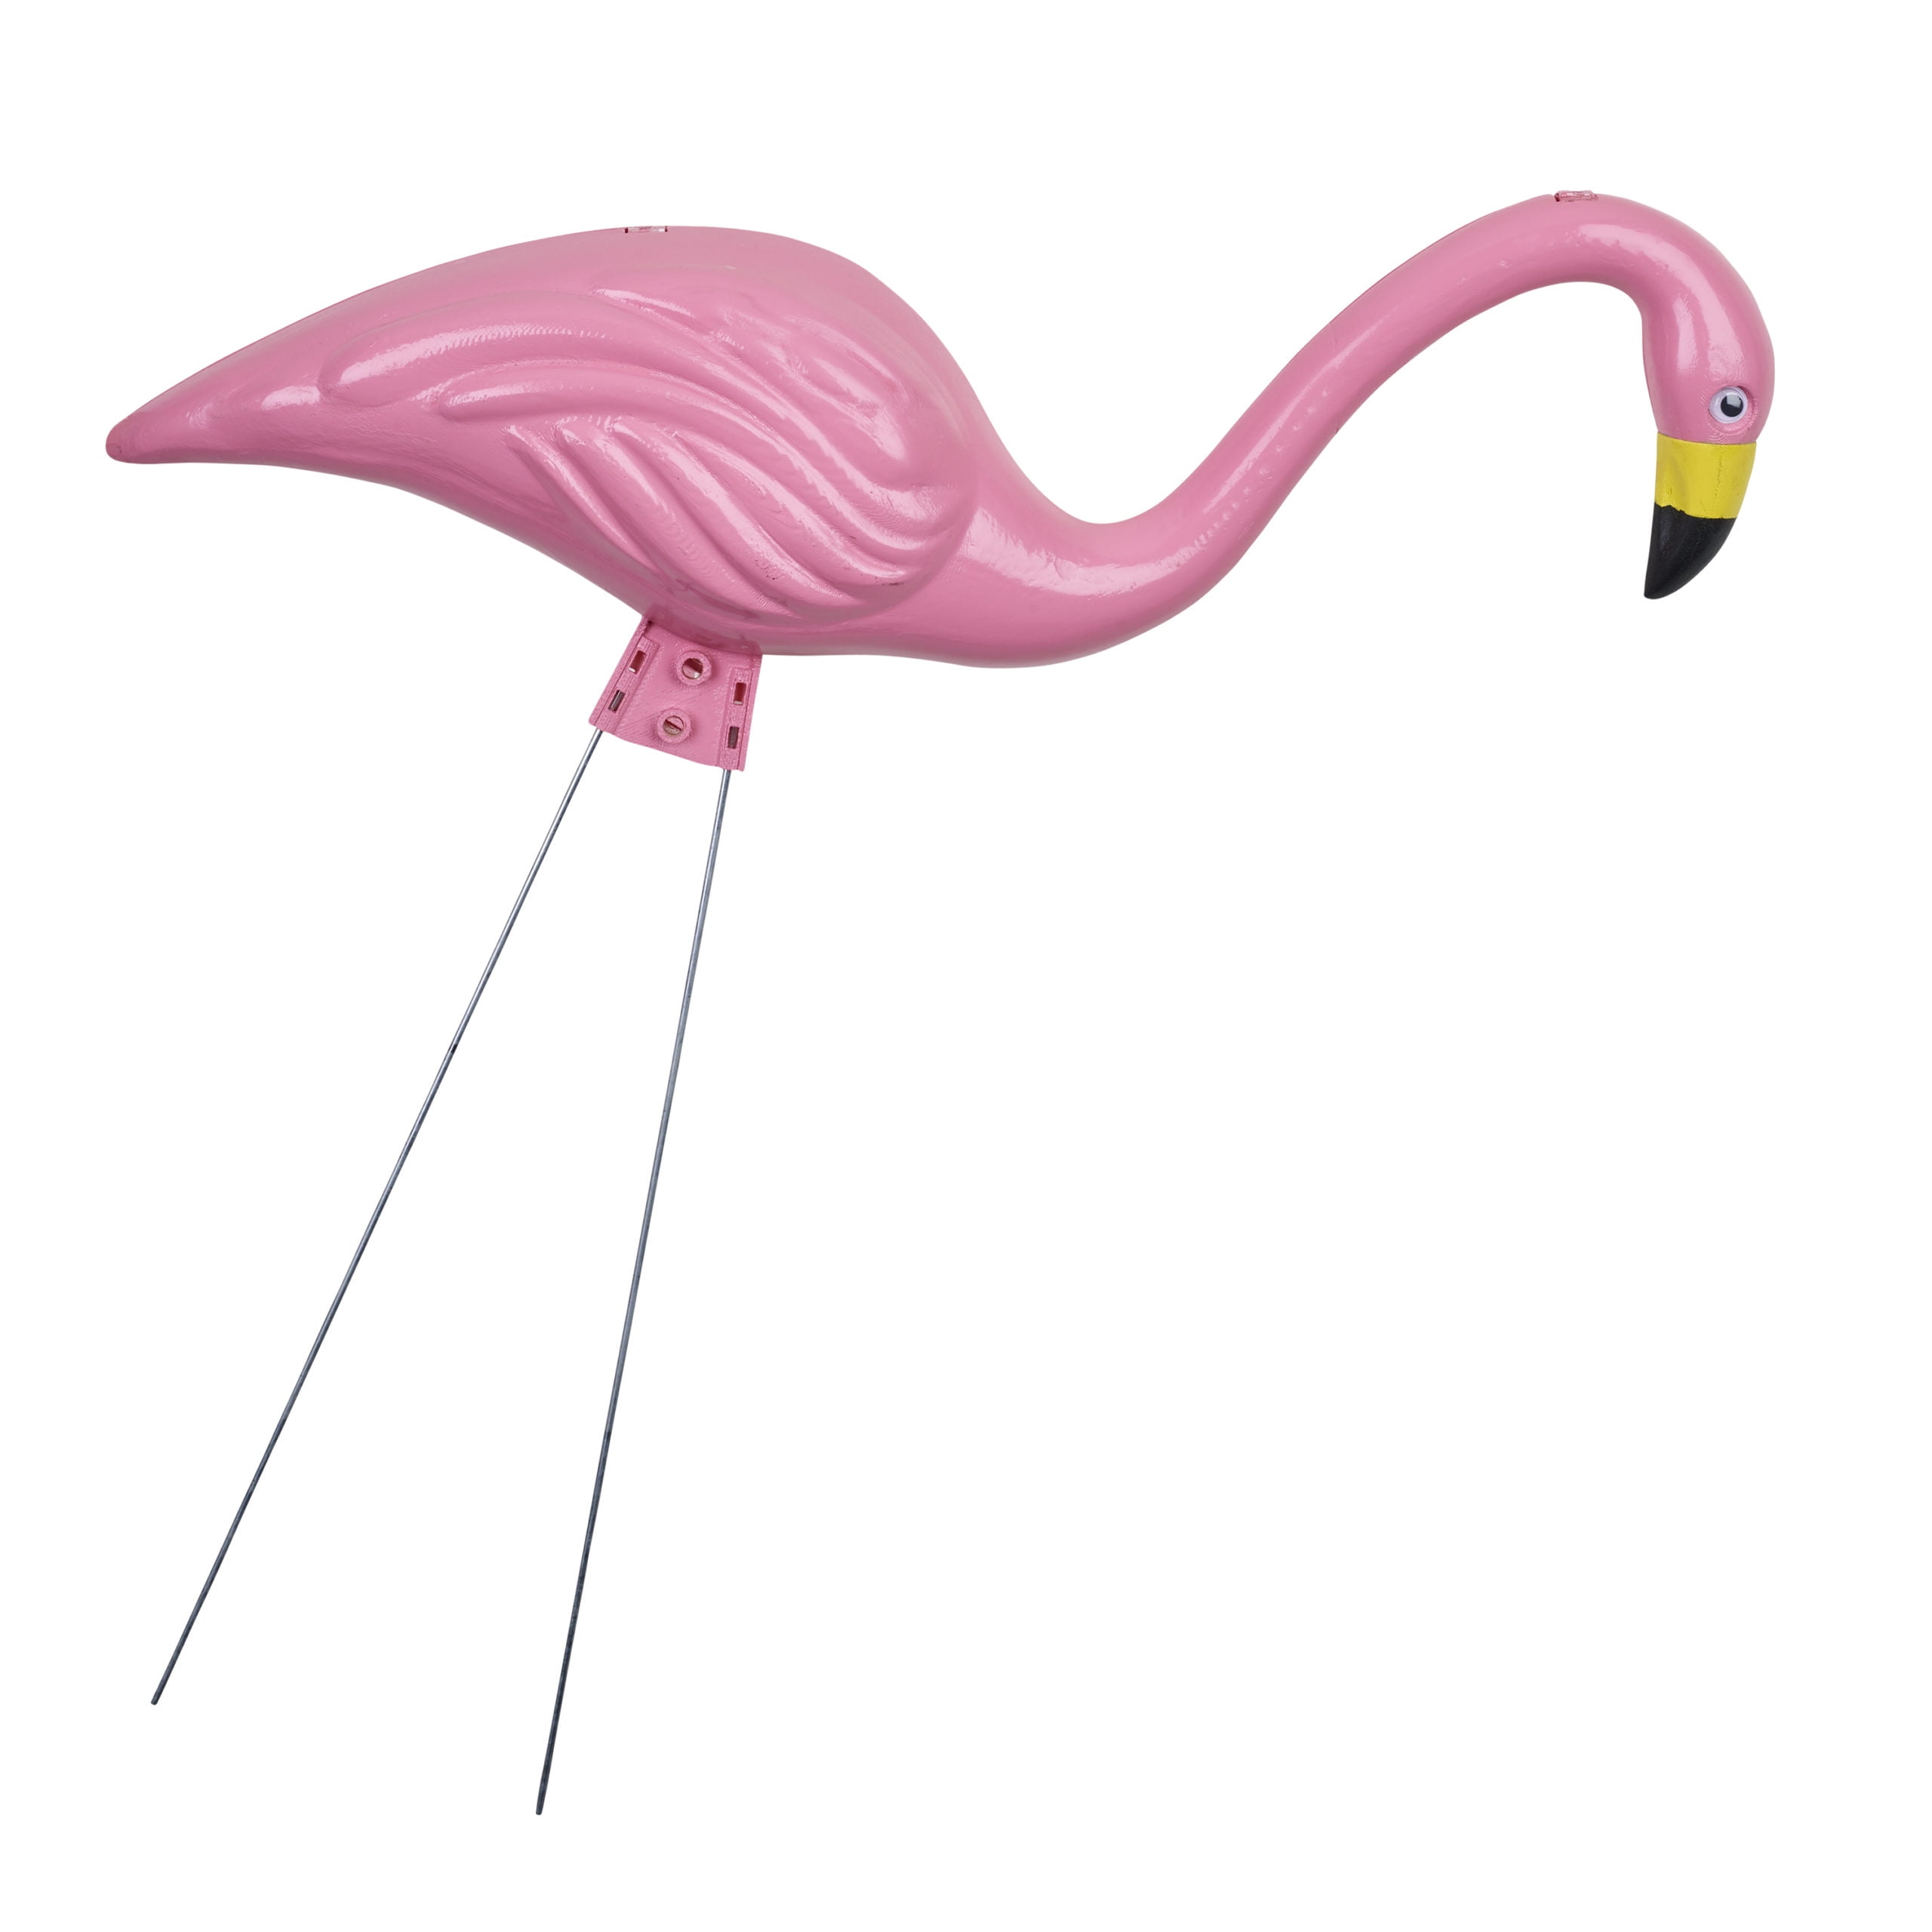 Bloem Living 2pk Mini Pink Flamingo G52 Unit Each for sale online 